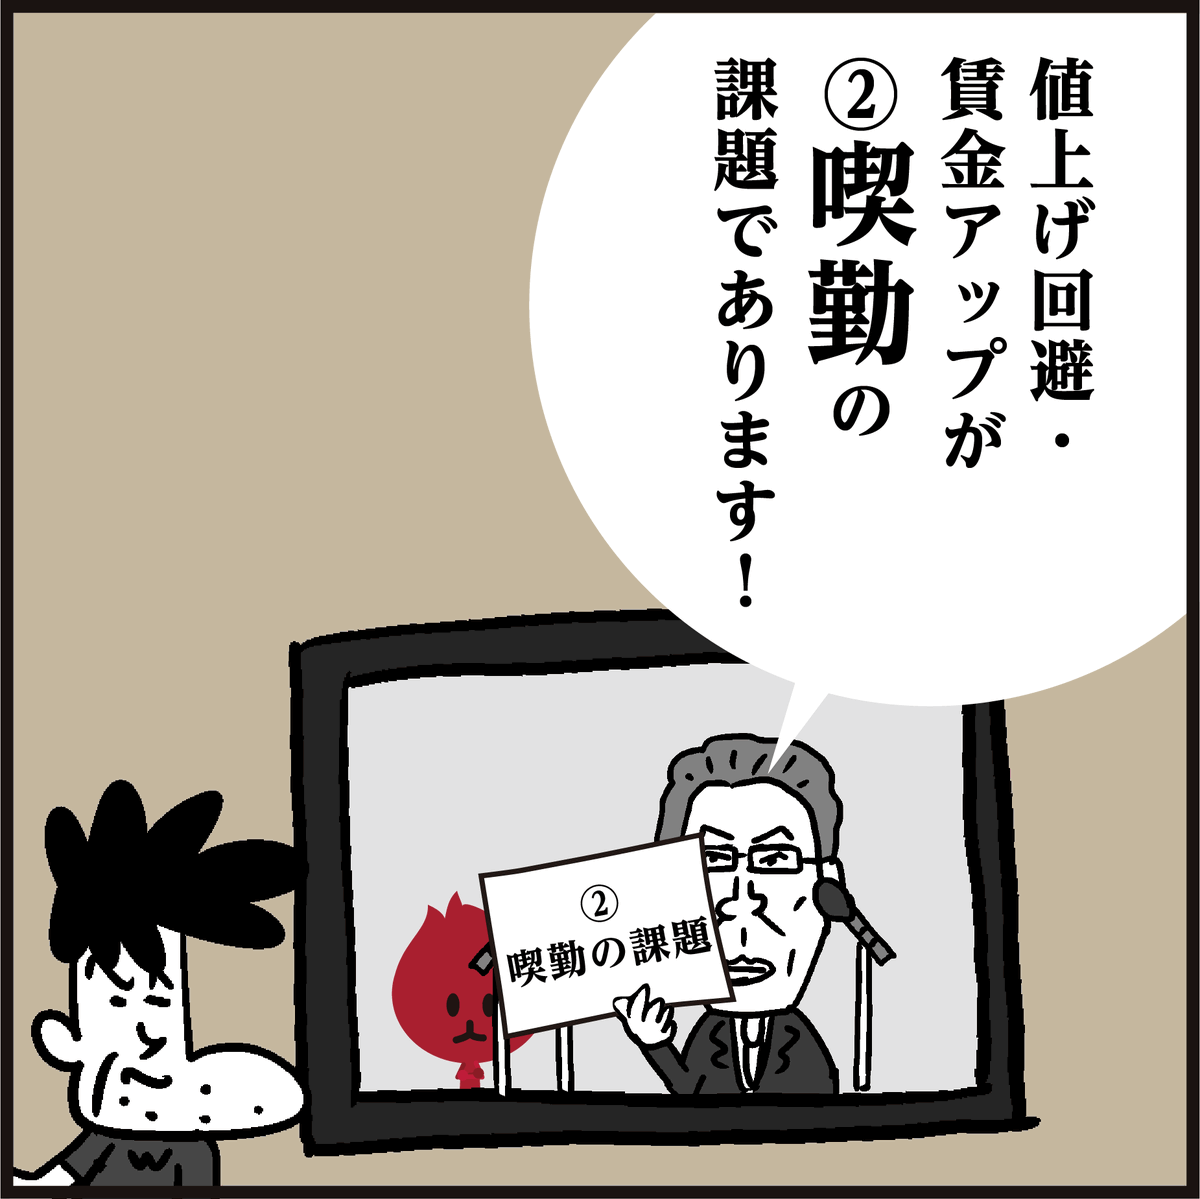 「喫緊の課題てす!」
🤔【きっきん】漢字わかりましたか? <4コマ漫画>
意味は「差し迫って重要なこと。」ですね。#イラスト 